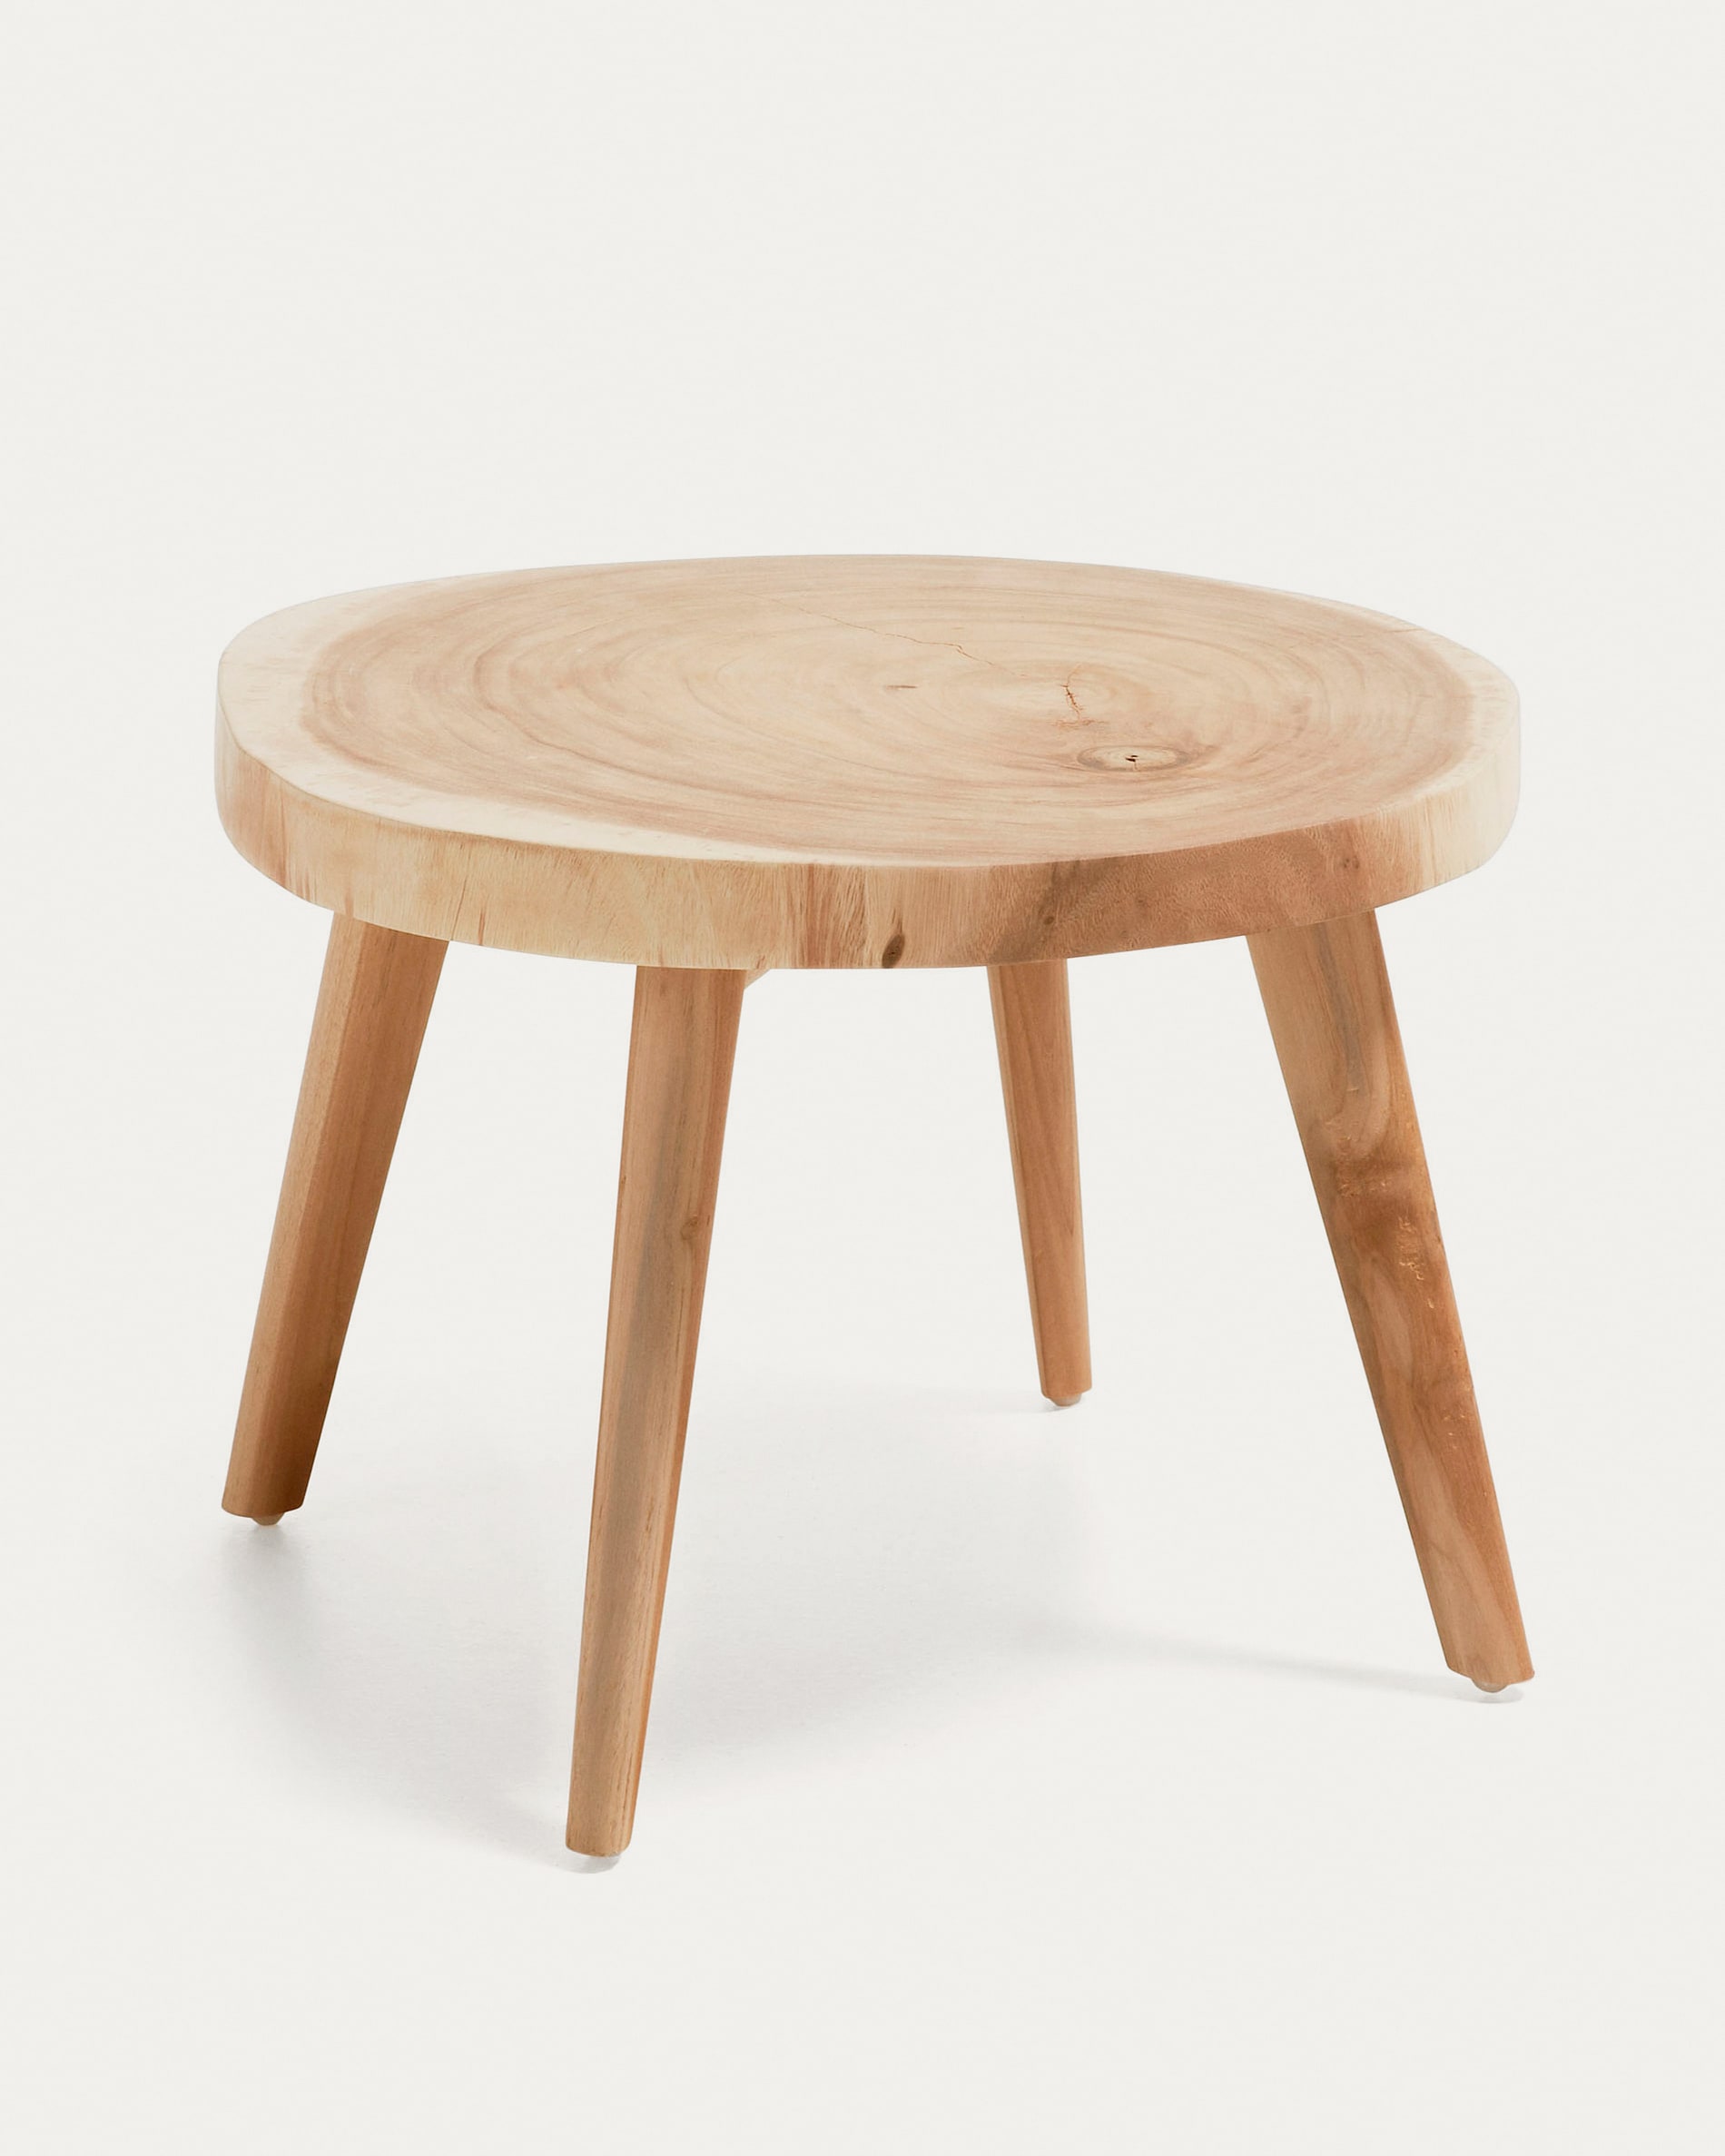 Table d'appoint en bois de 30 cm - plateau pliable et amovible